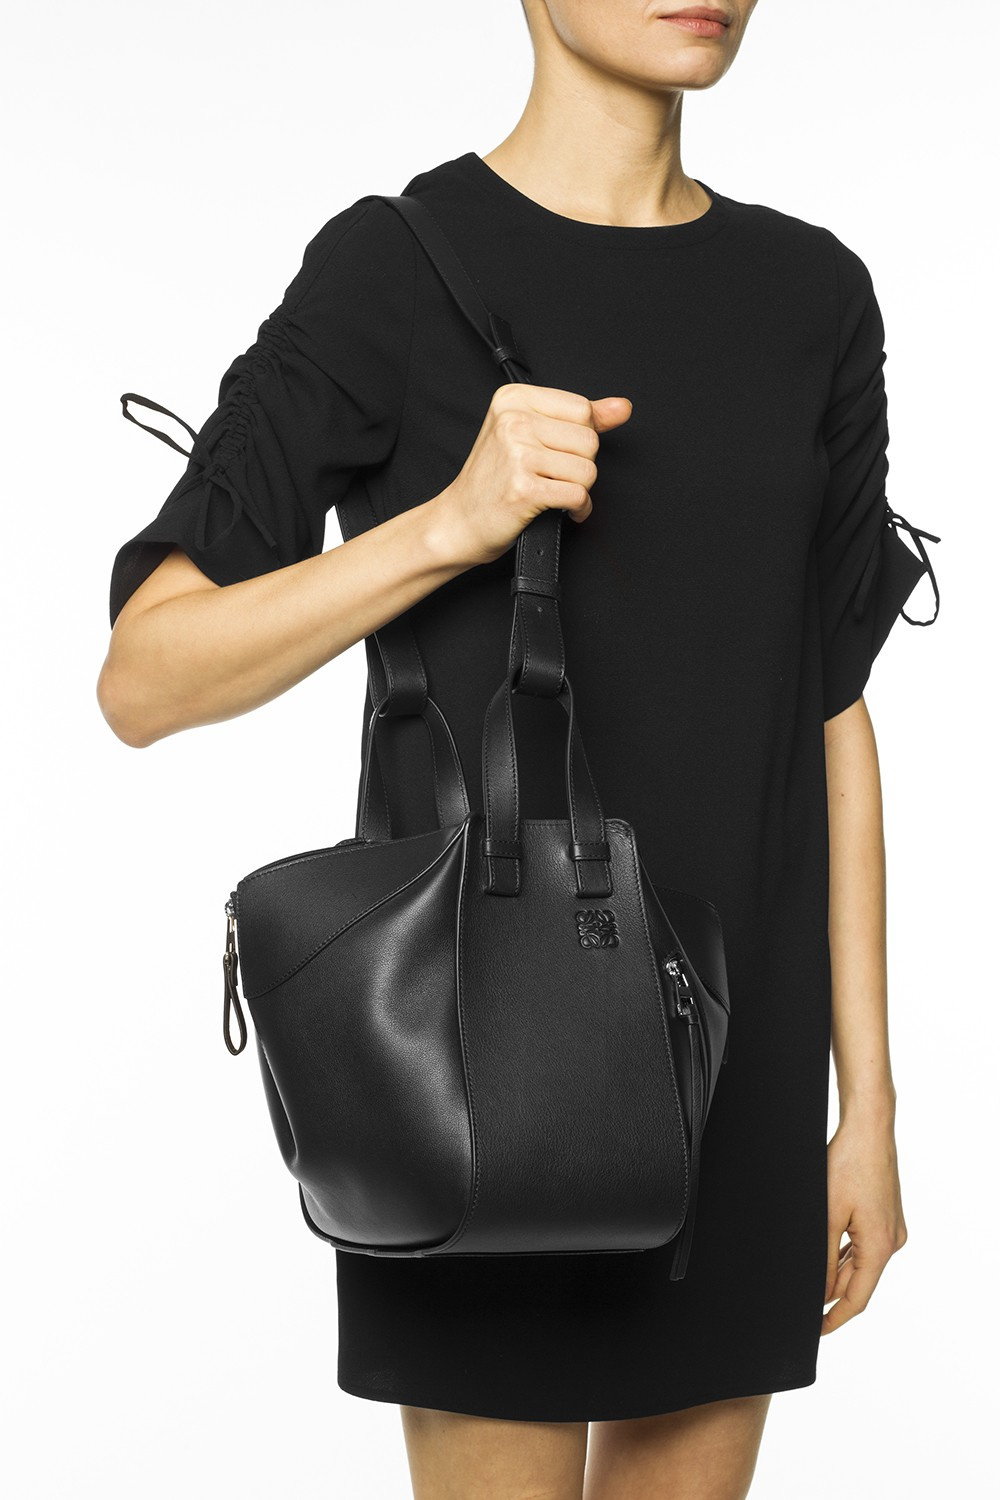 Hammock Small Leather Shoulder Bag in Black - Loewe